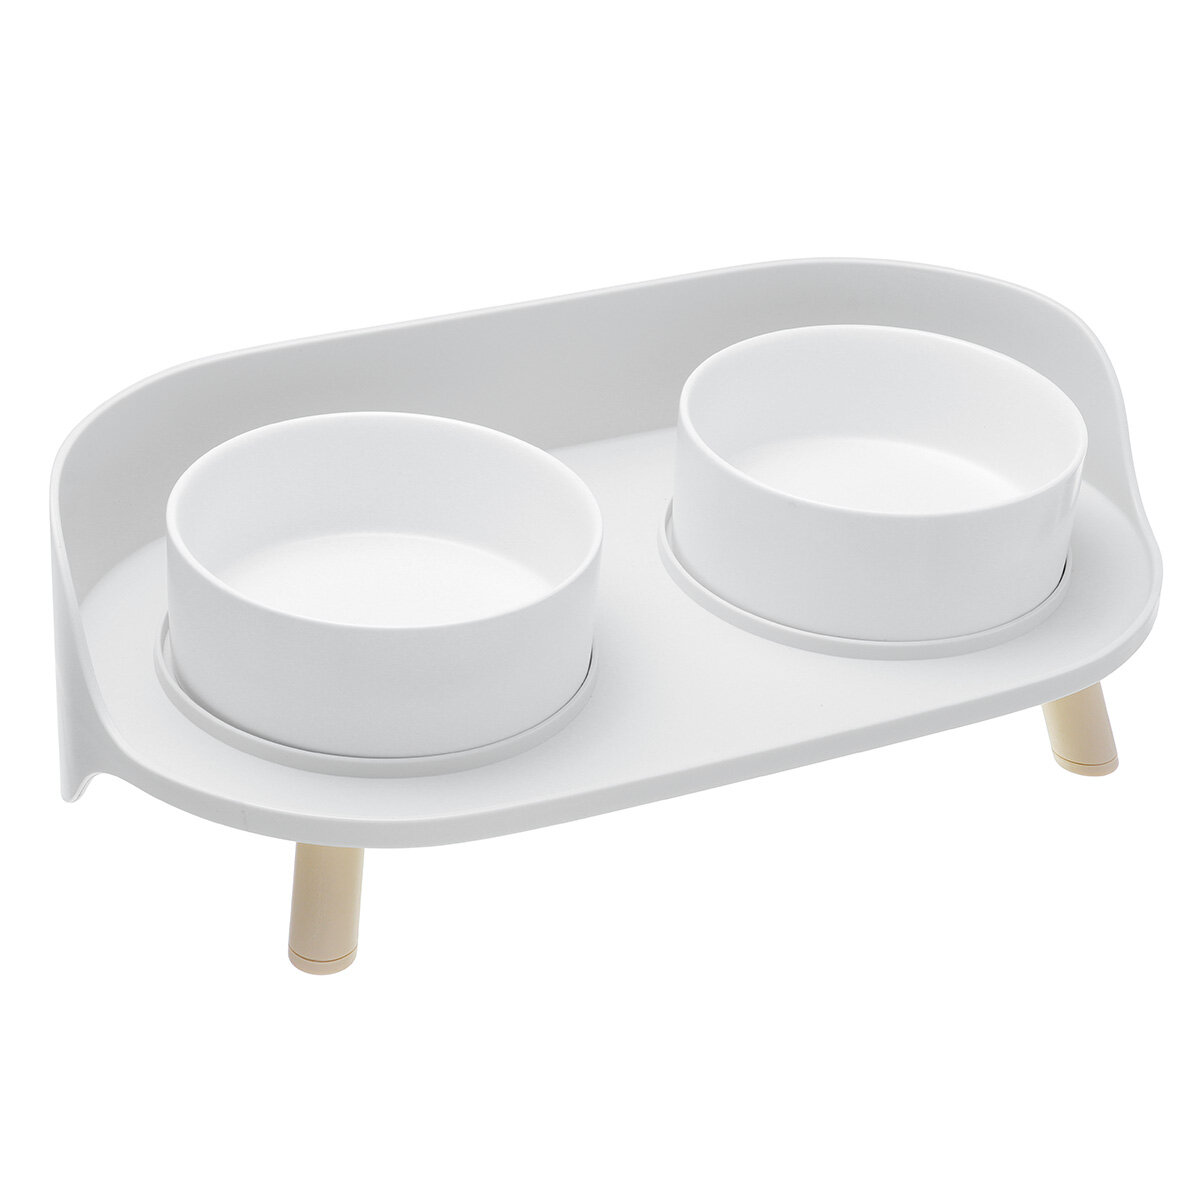 Image of Double Holes Ceramic Cat Feeder Bowl Splash-proof High Quality Ceramic Pet Bowl Separate Design Anti-slip Design